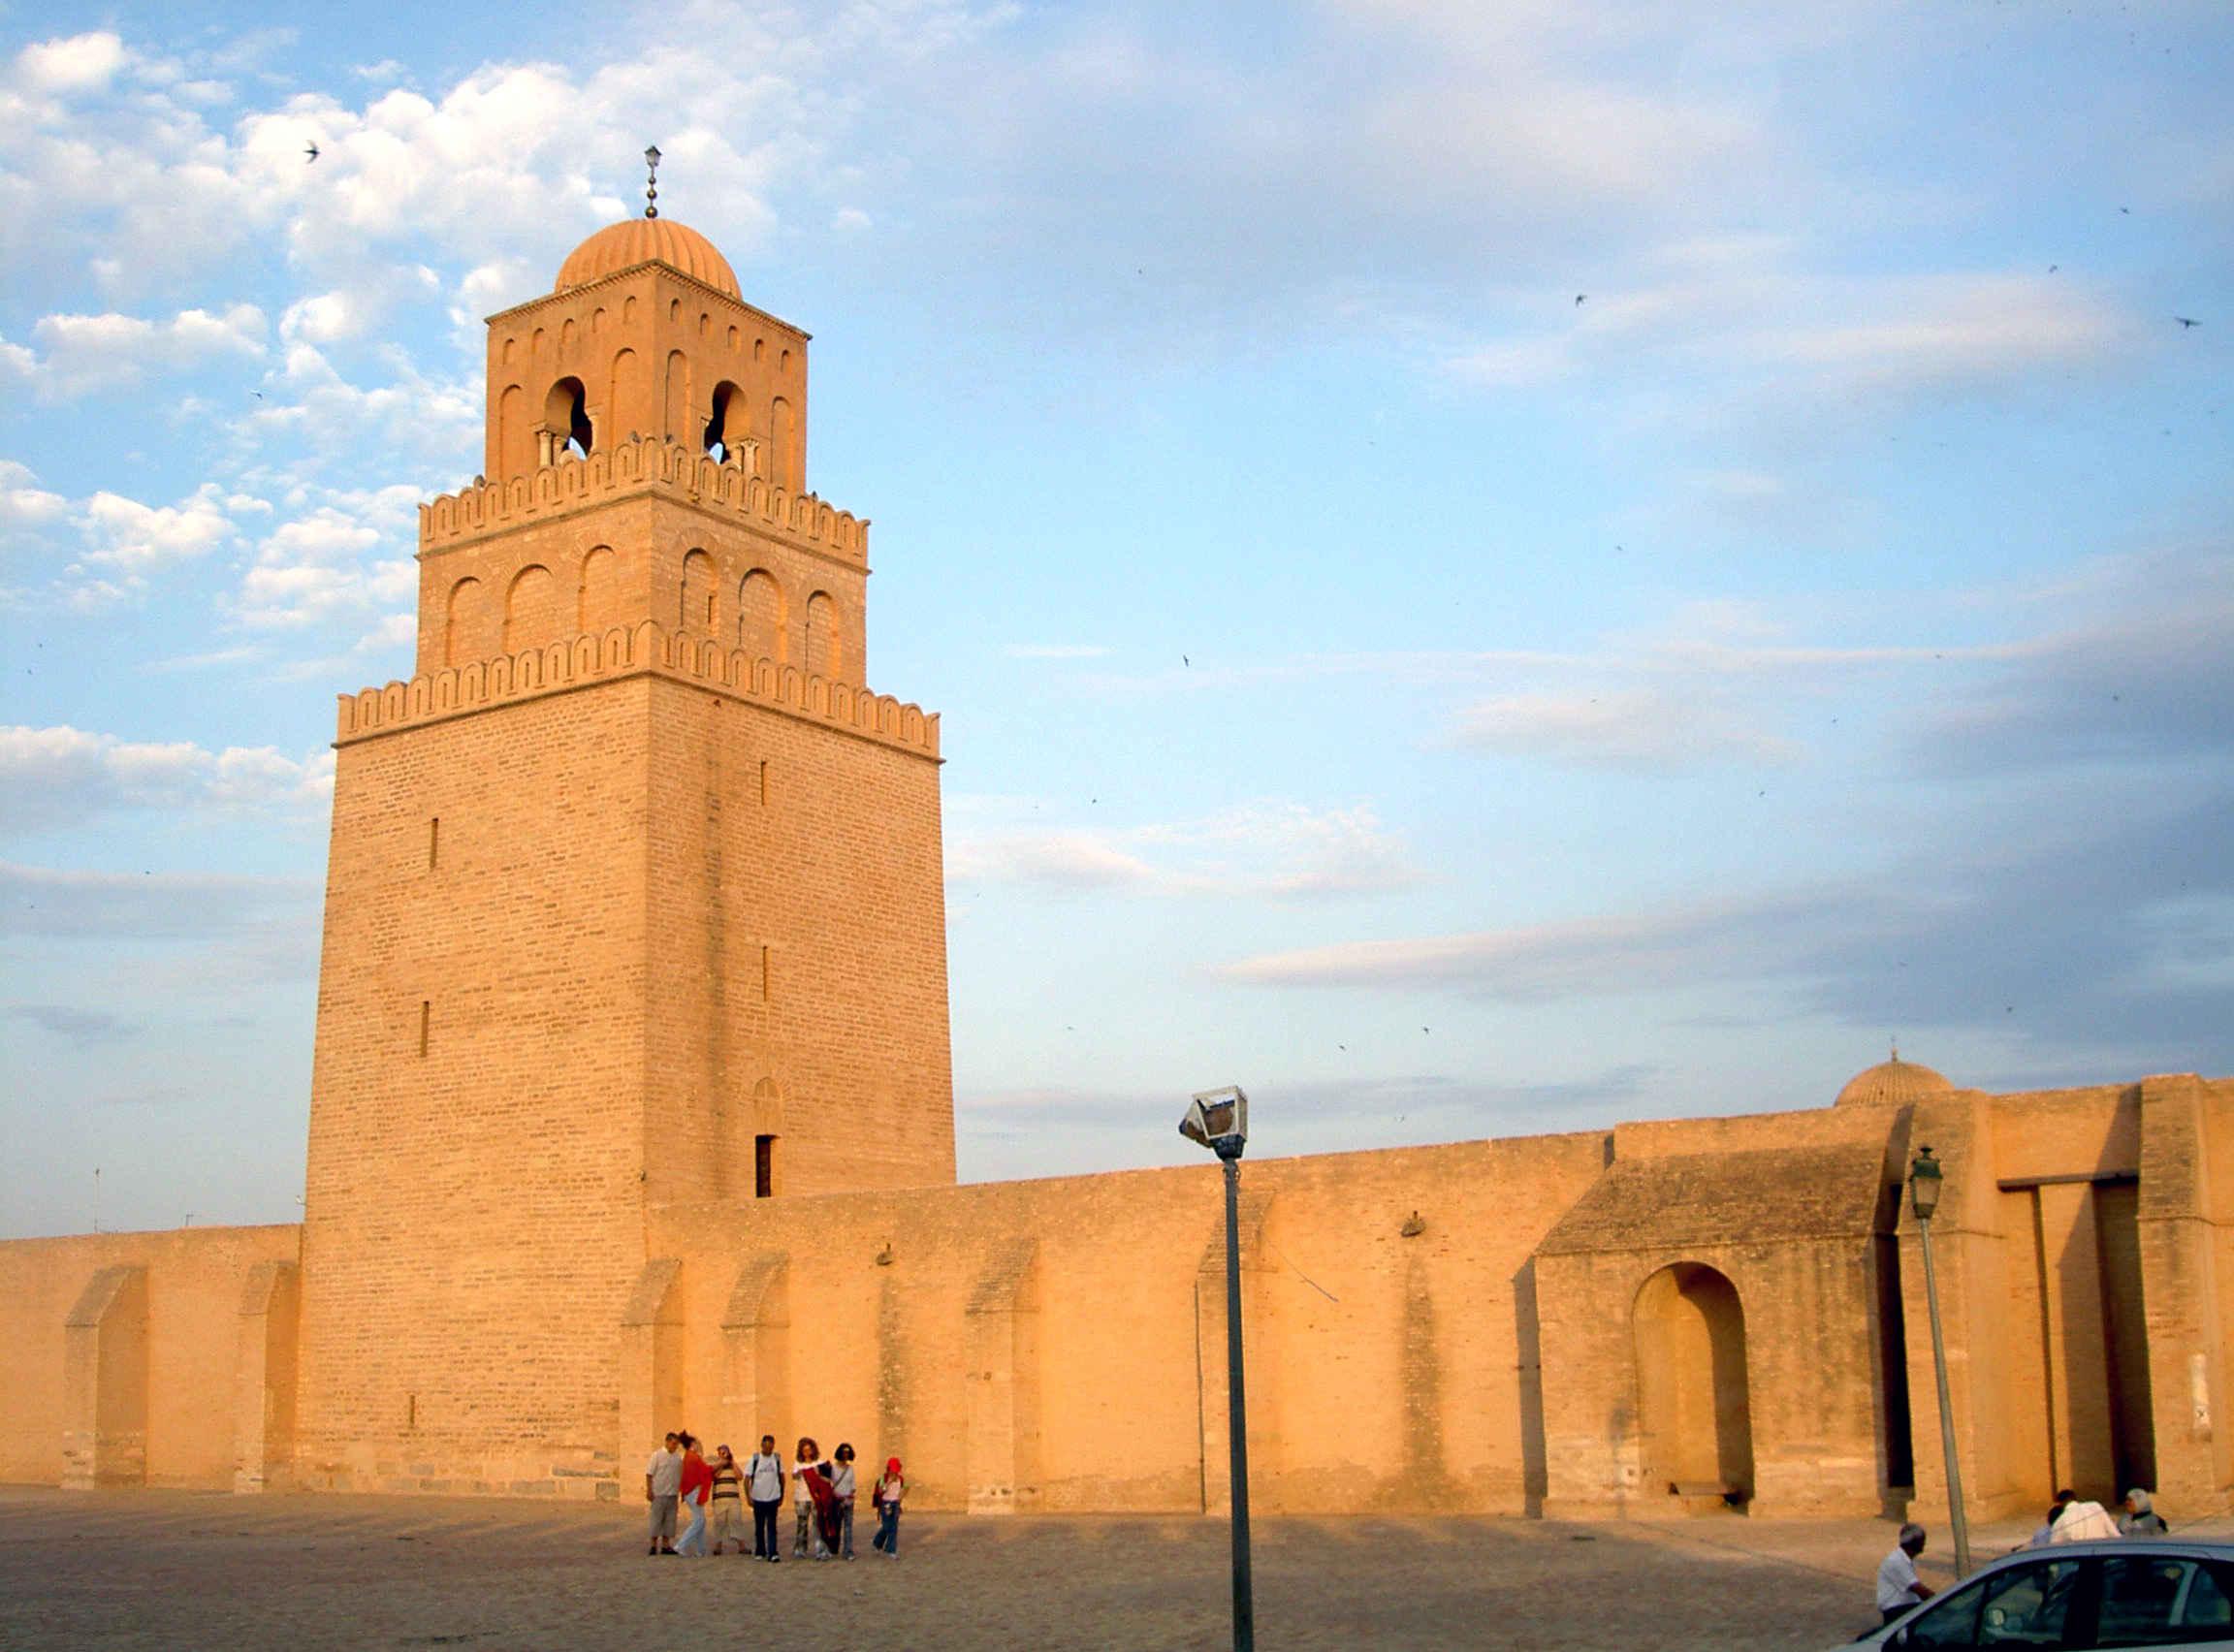 Okba Mosque in Kairuan - Tunisia (1)